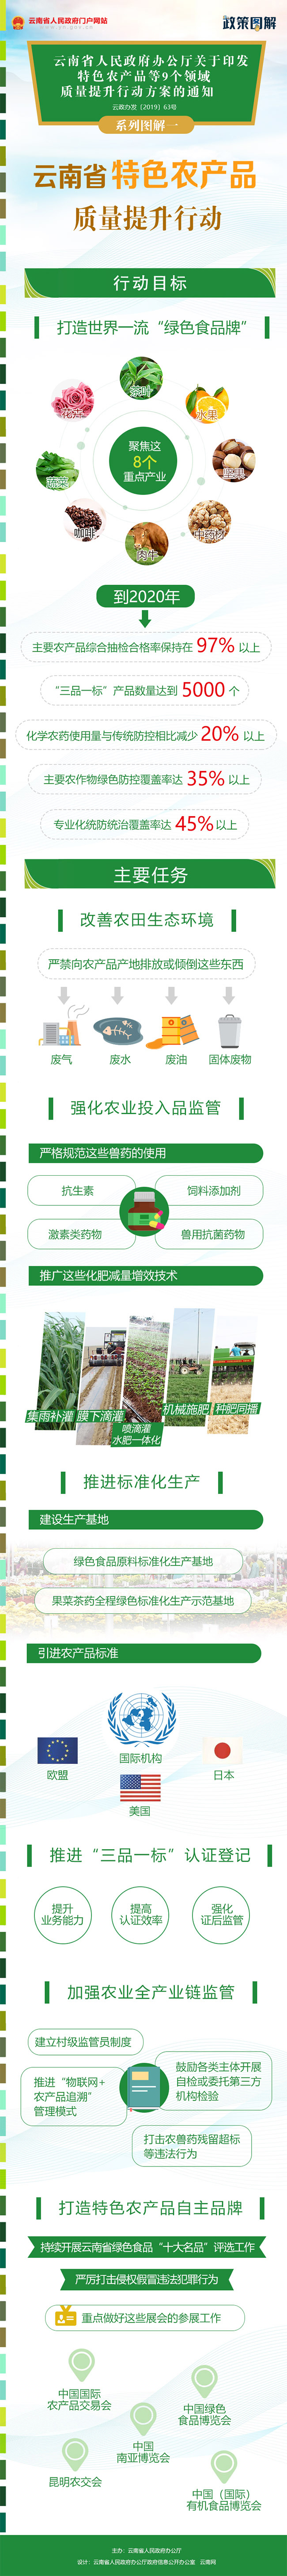 《云南省人民政府办公厅关于印发特色农产品等9个领域质量提升行动方案的通知》系列图解一.jpg